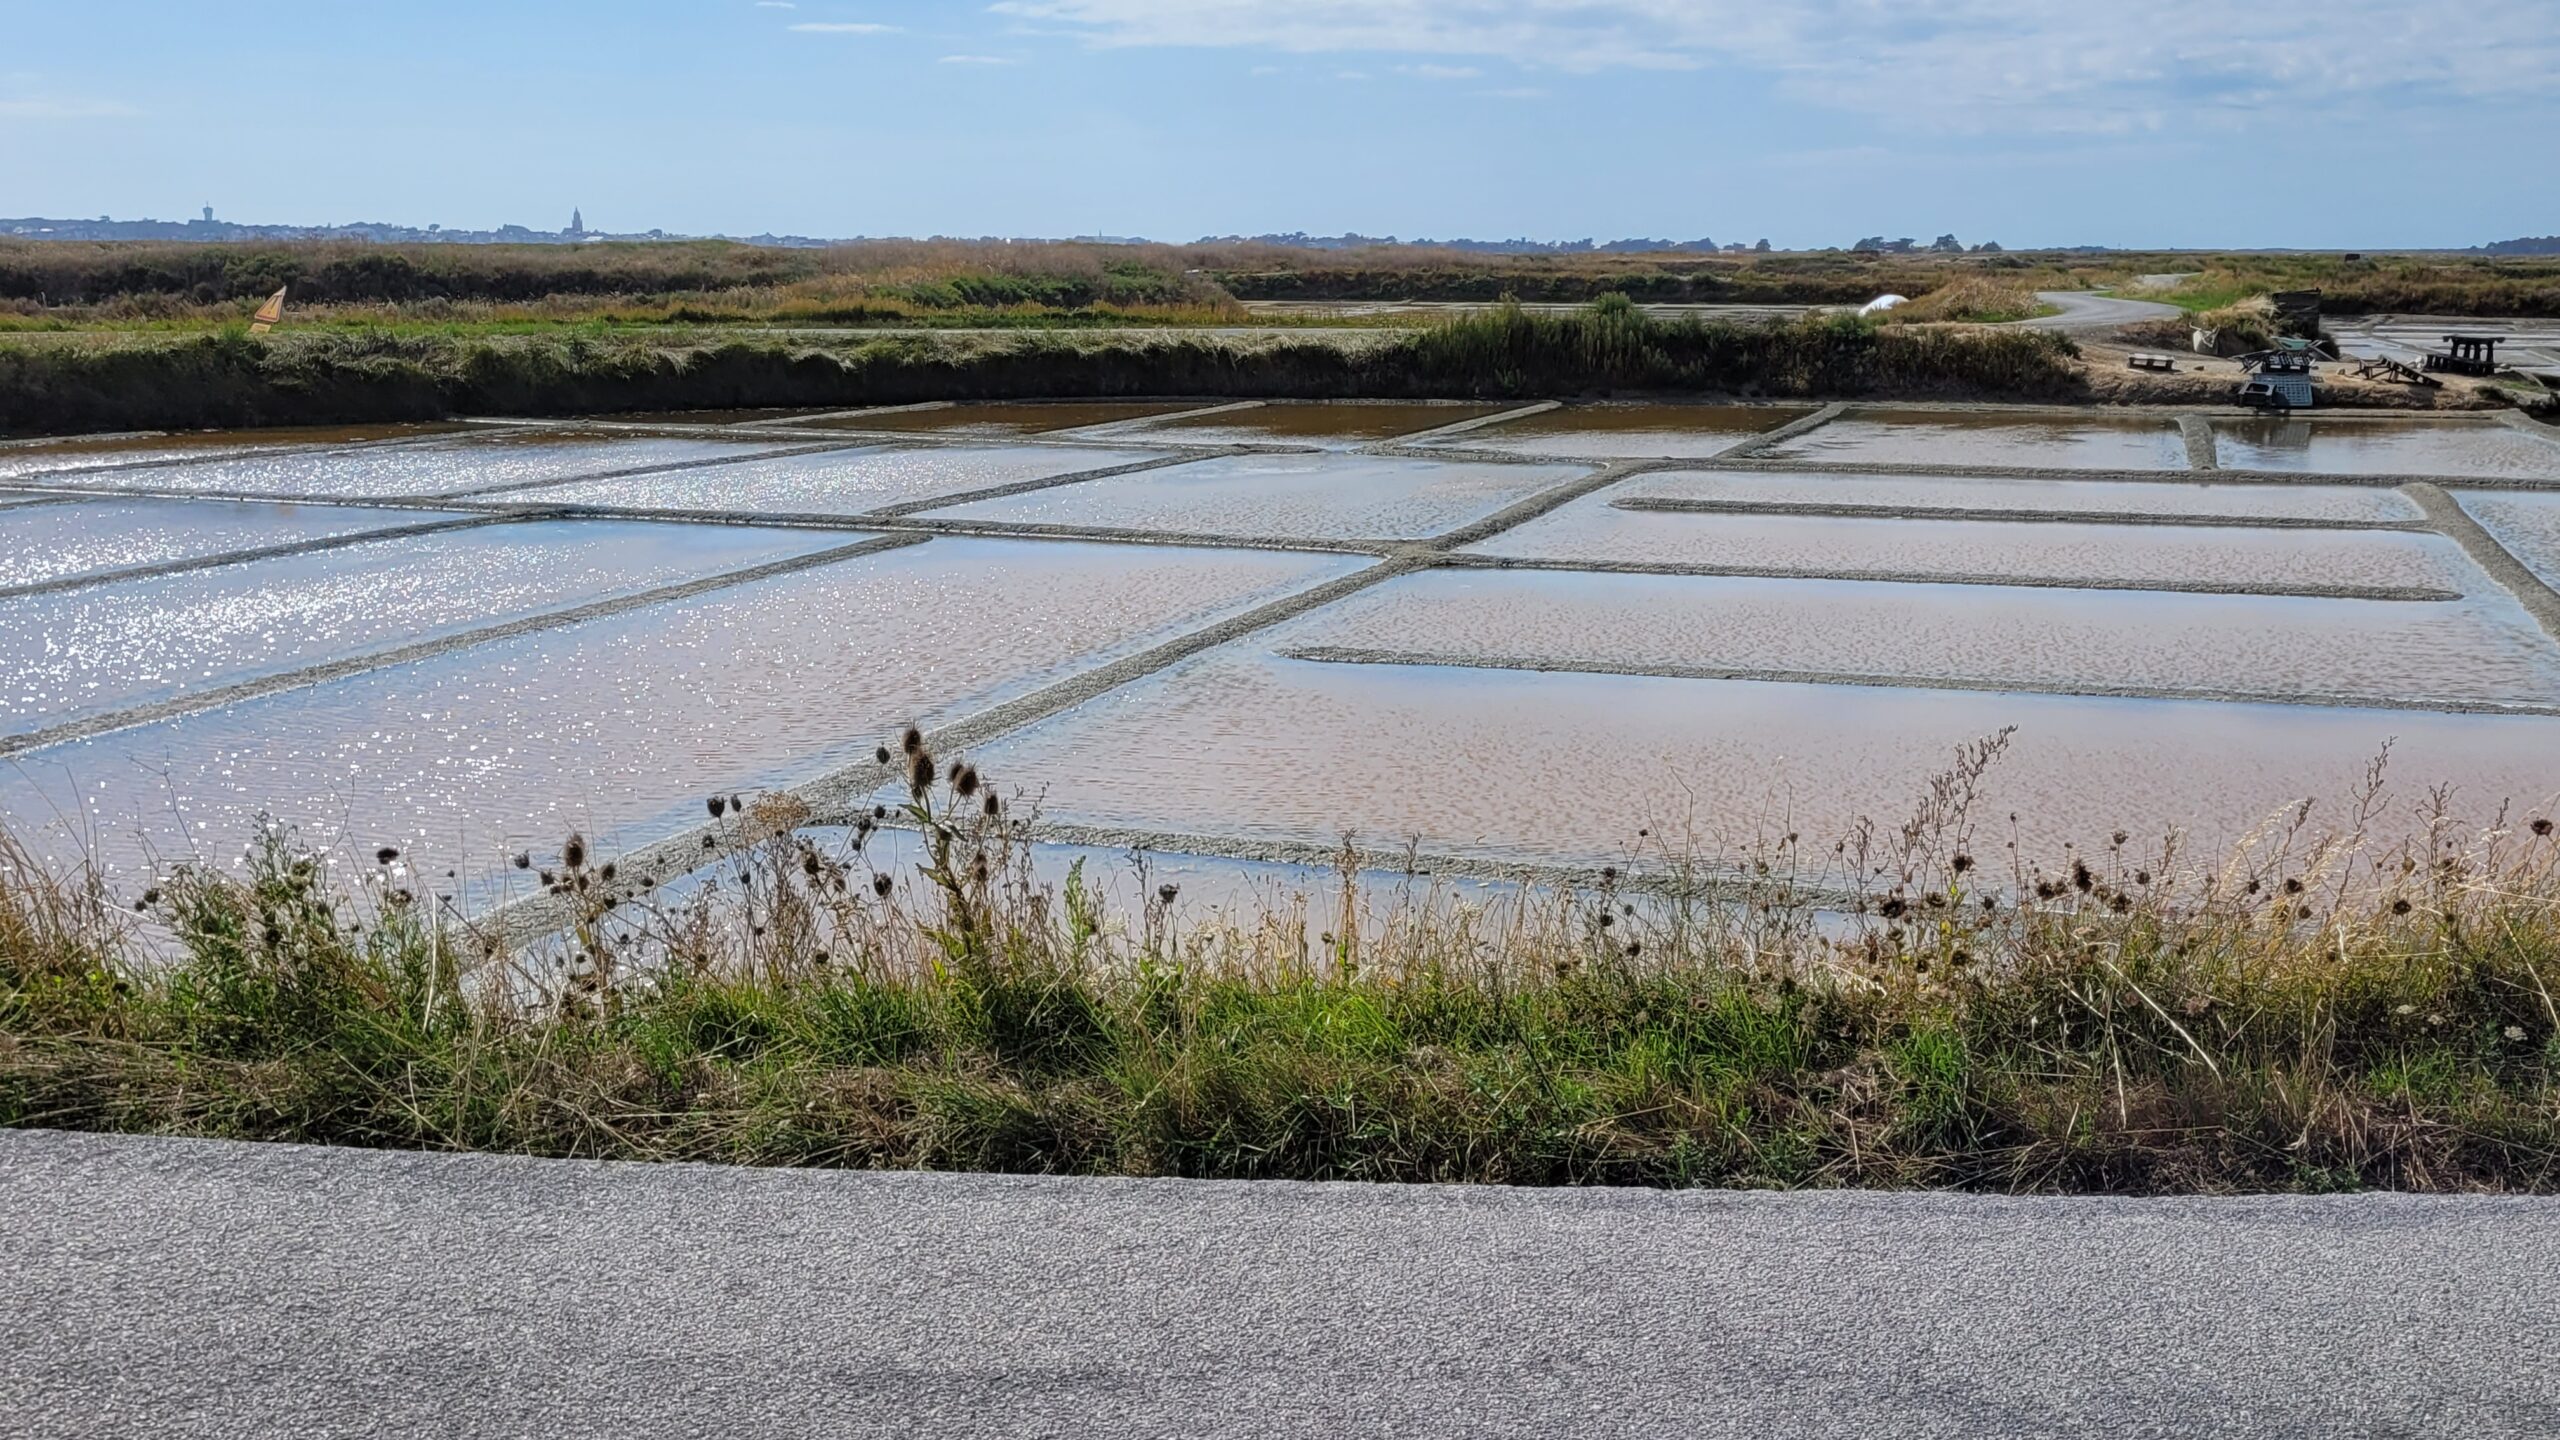 Les marais salants du bassin du MES au nord de Guérande